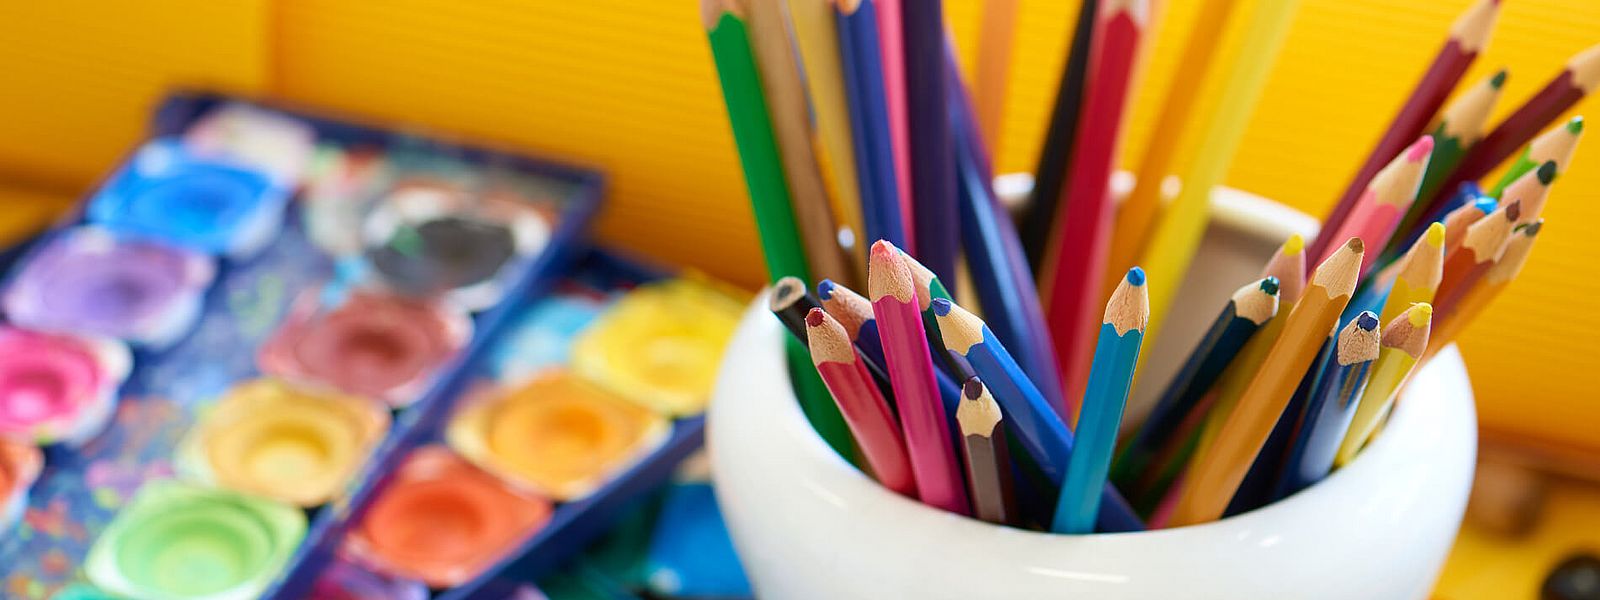 Holzbuntstifte und Farbmalkästen stehen auf Tisch mzg-seniorenzentrum2.jpg